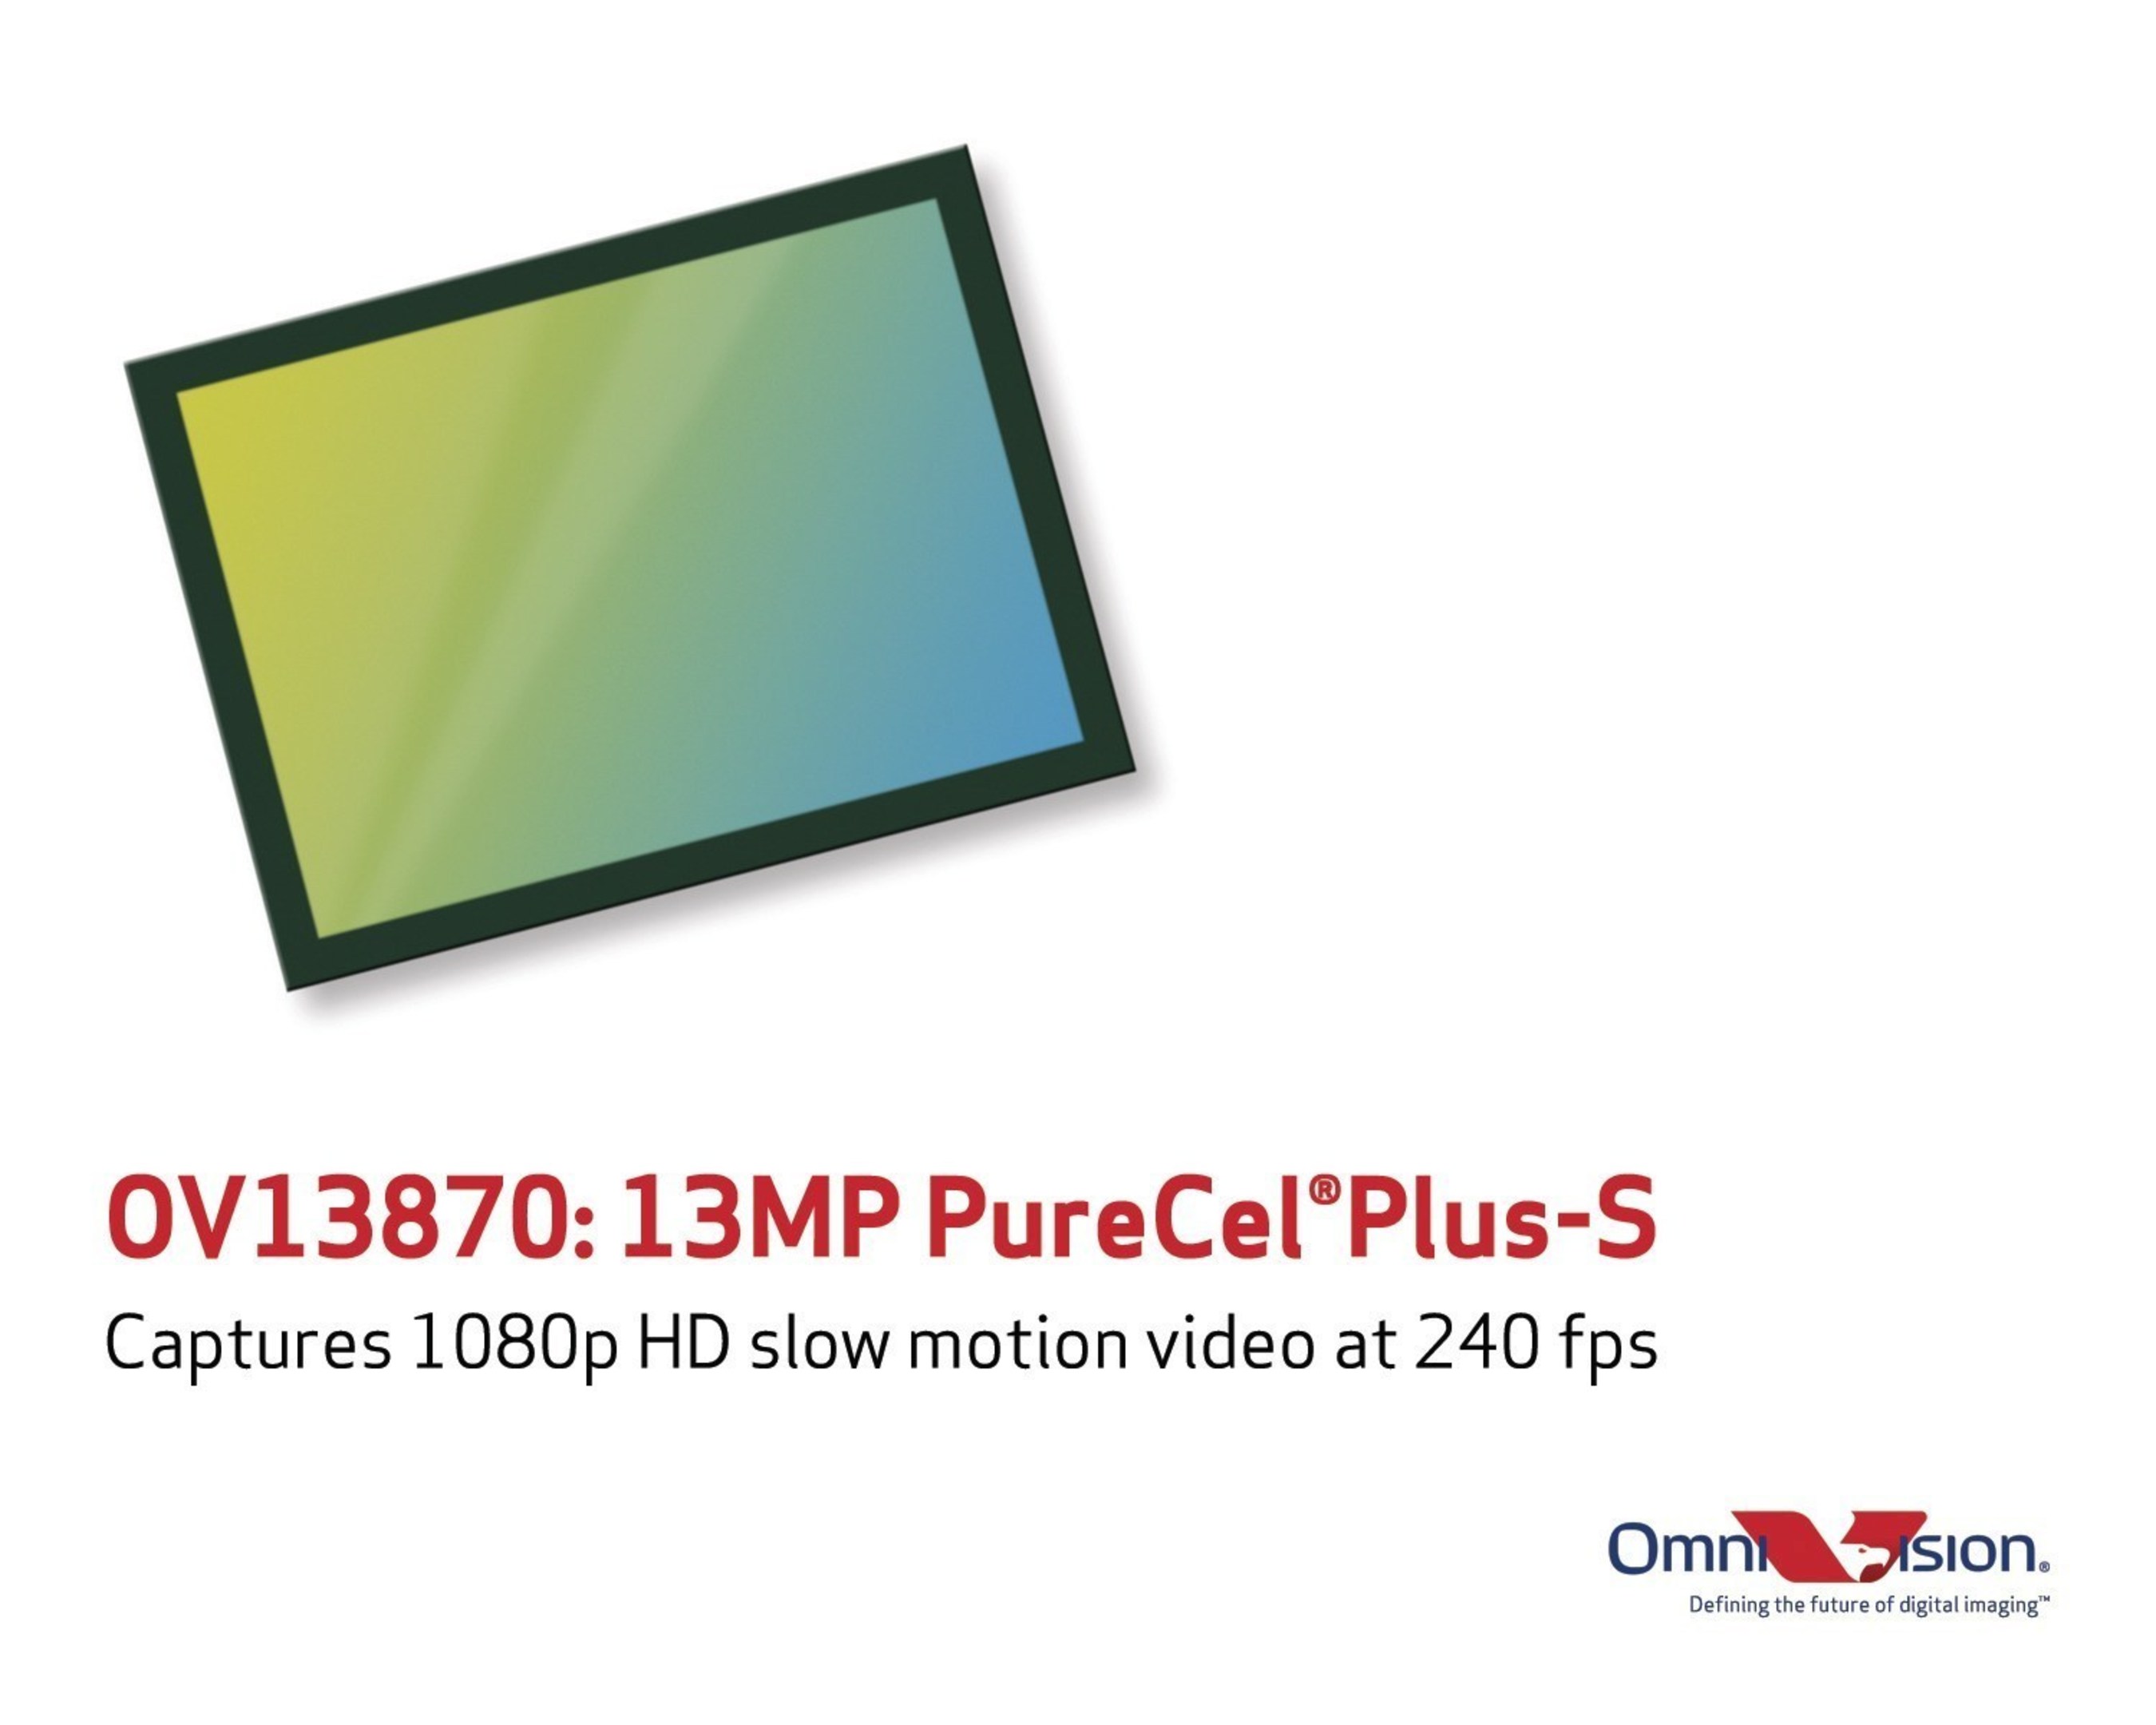 OmniVision's new 13-megapixel PureCel(R)Plus-S sensor captures slow motion 1080p HD video.